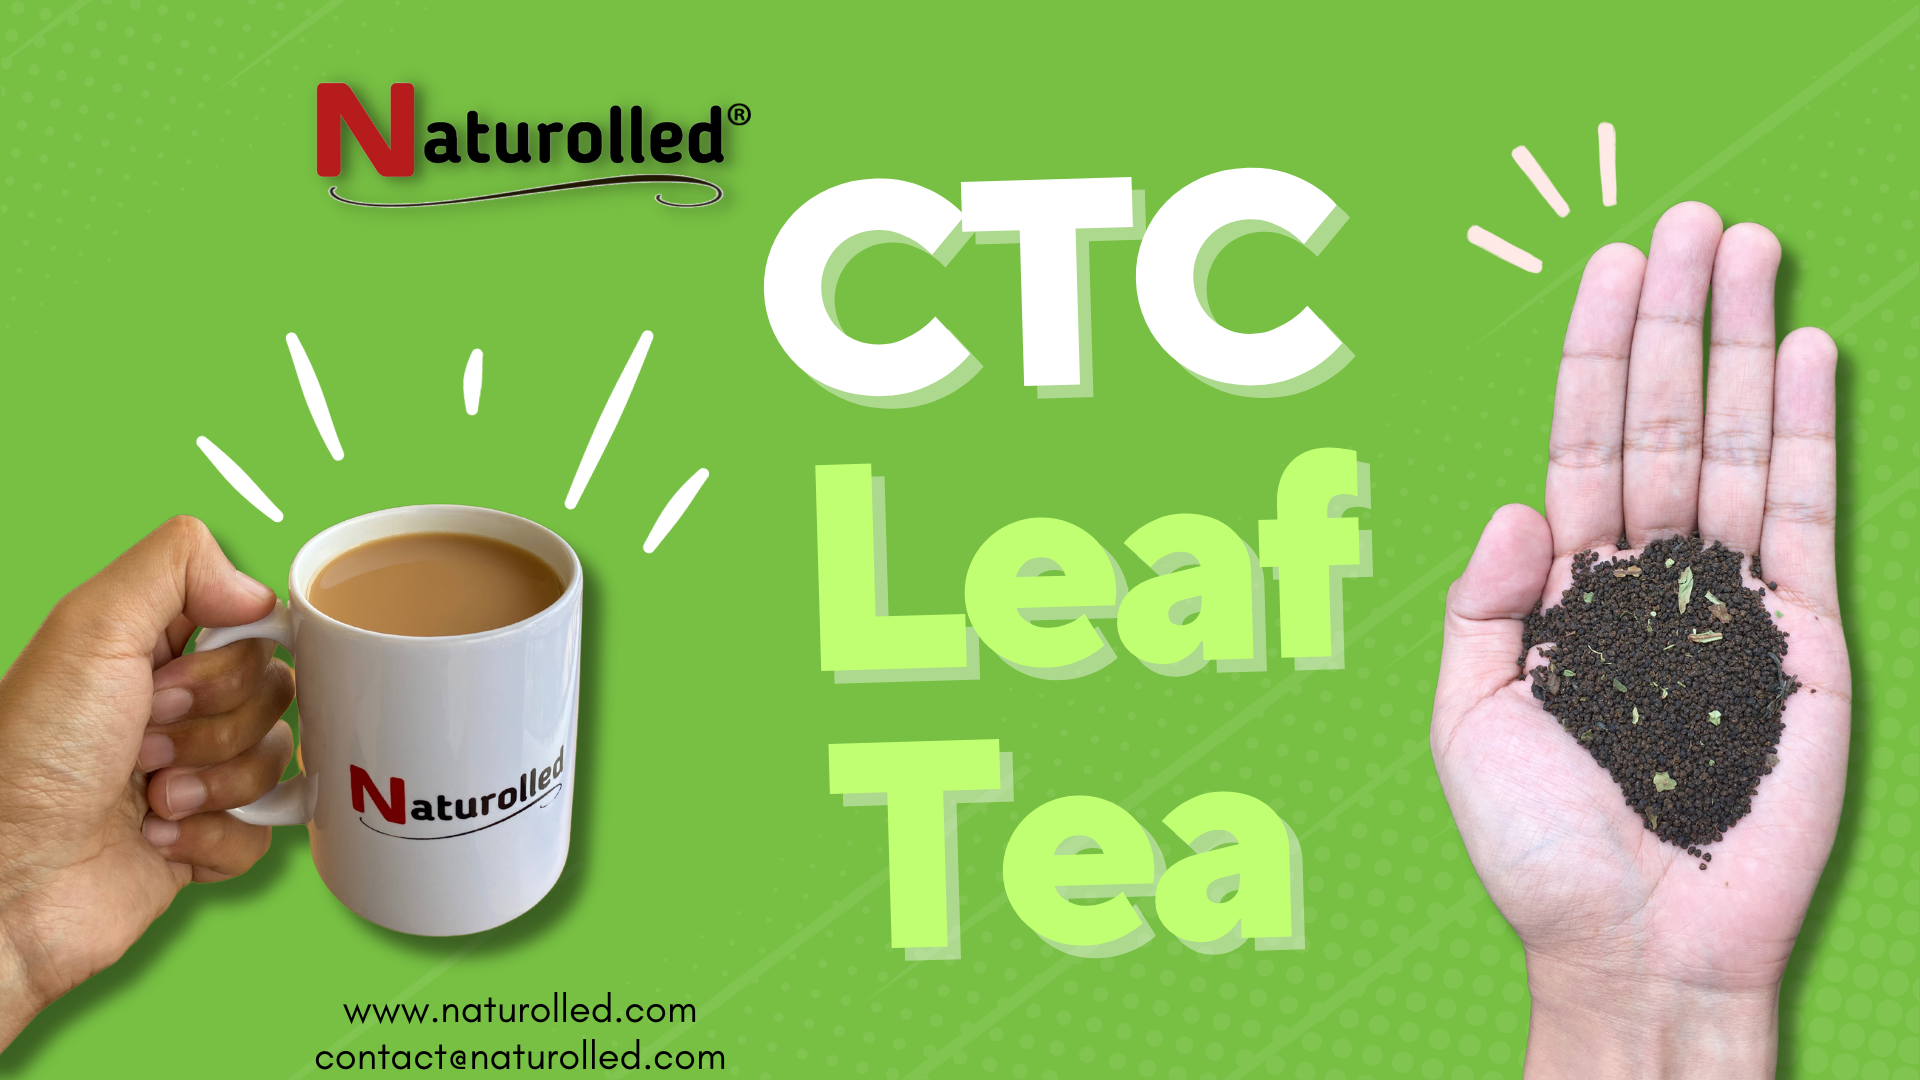 CTC leaf tea